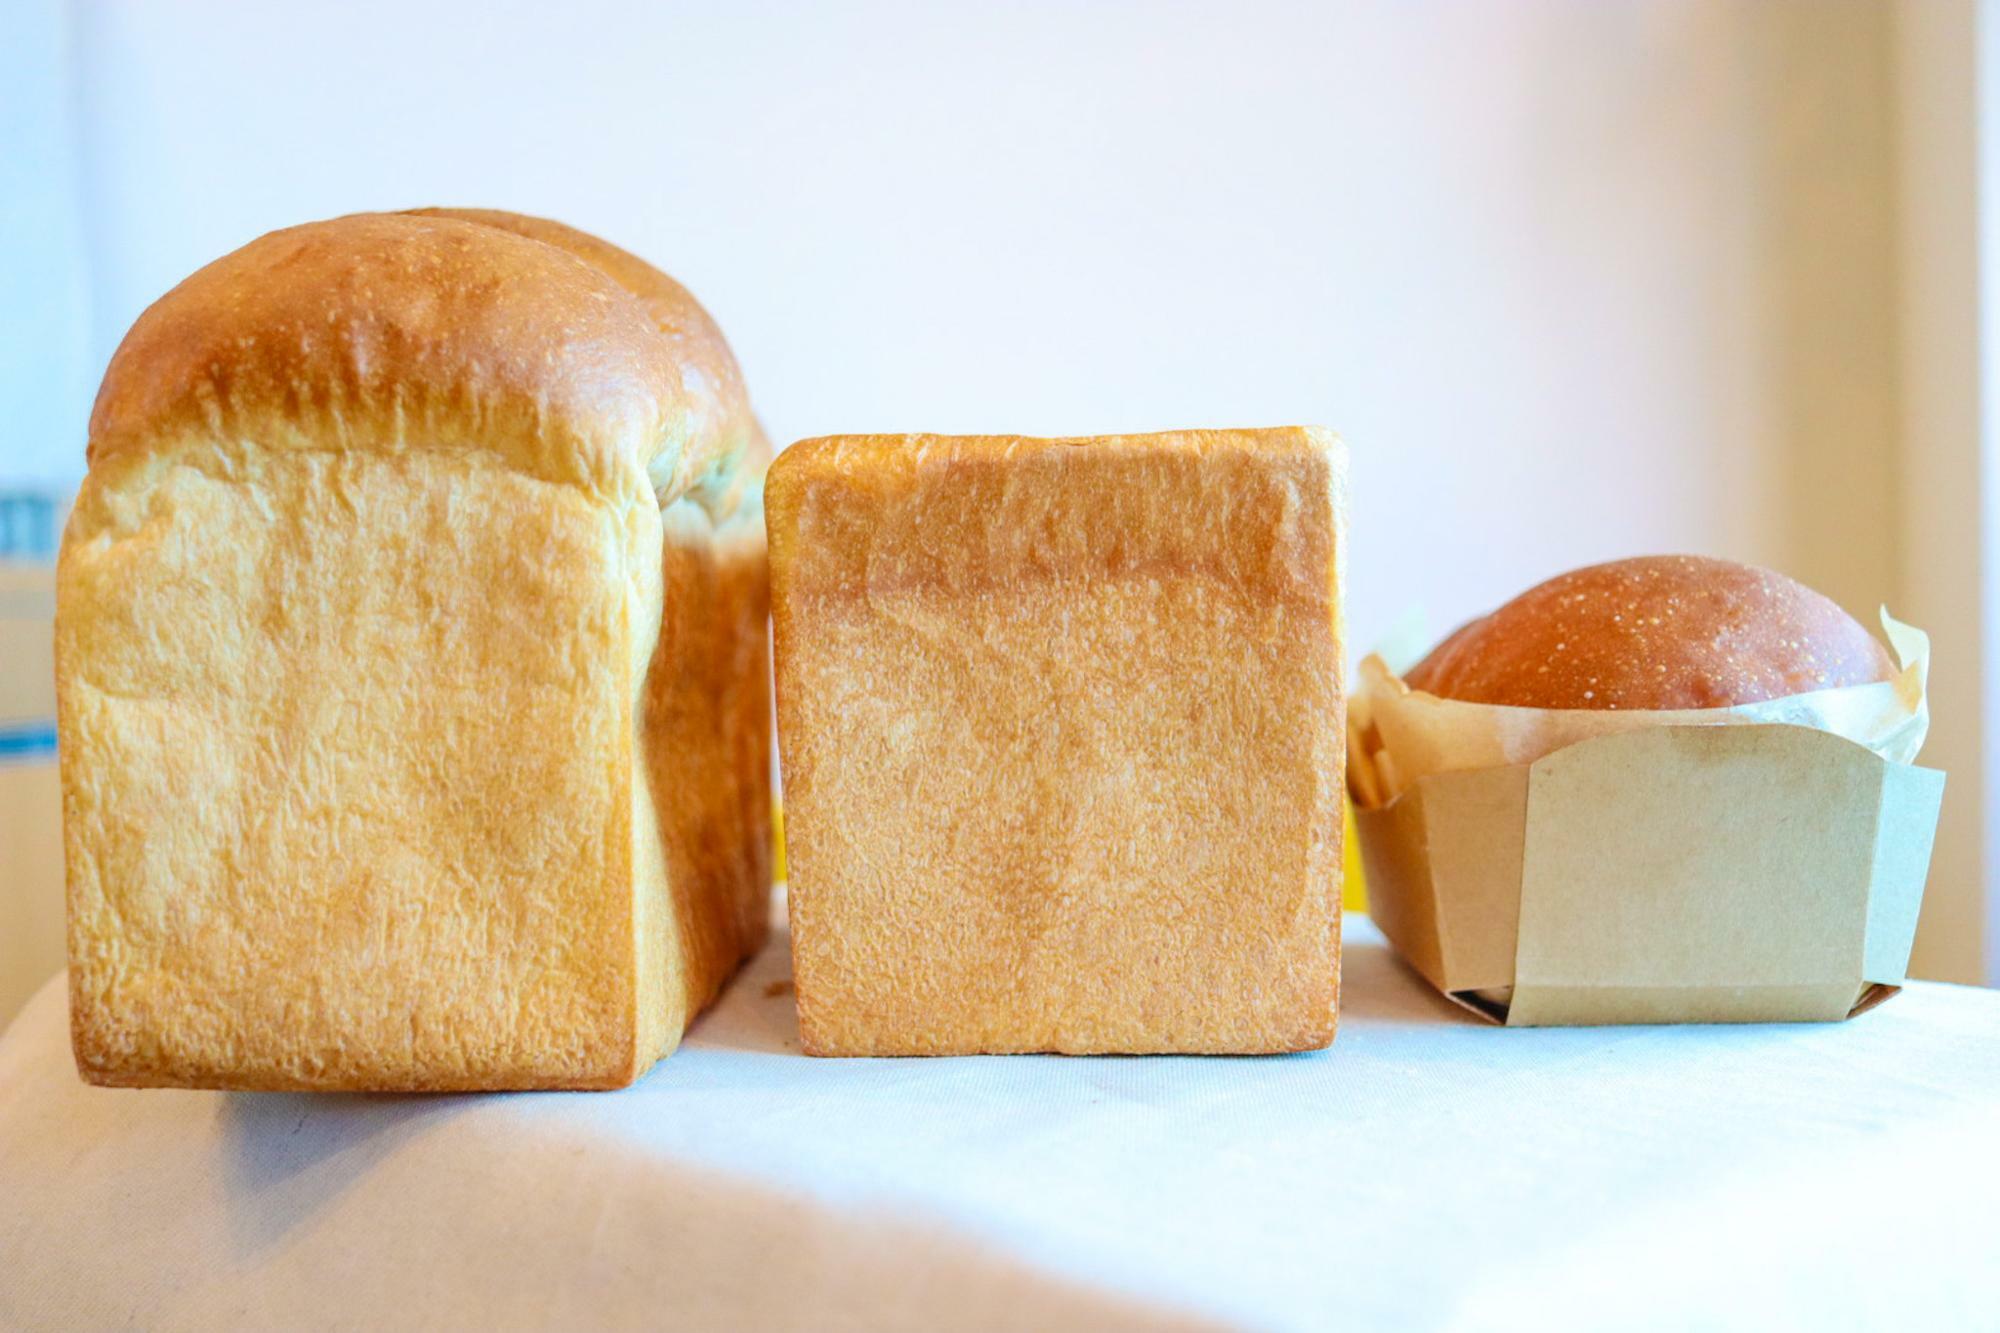 左「山食パン」真ん中「角食パン」右「ハチミツミルクブレッド」